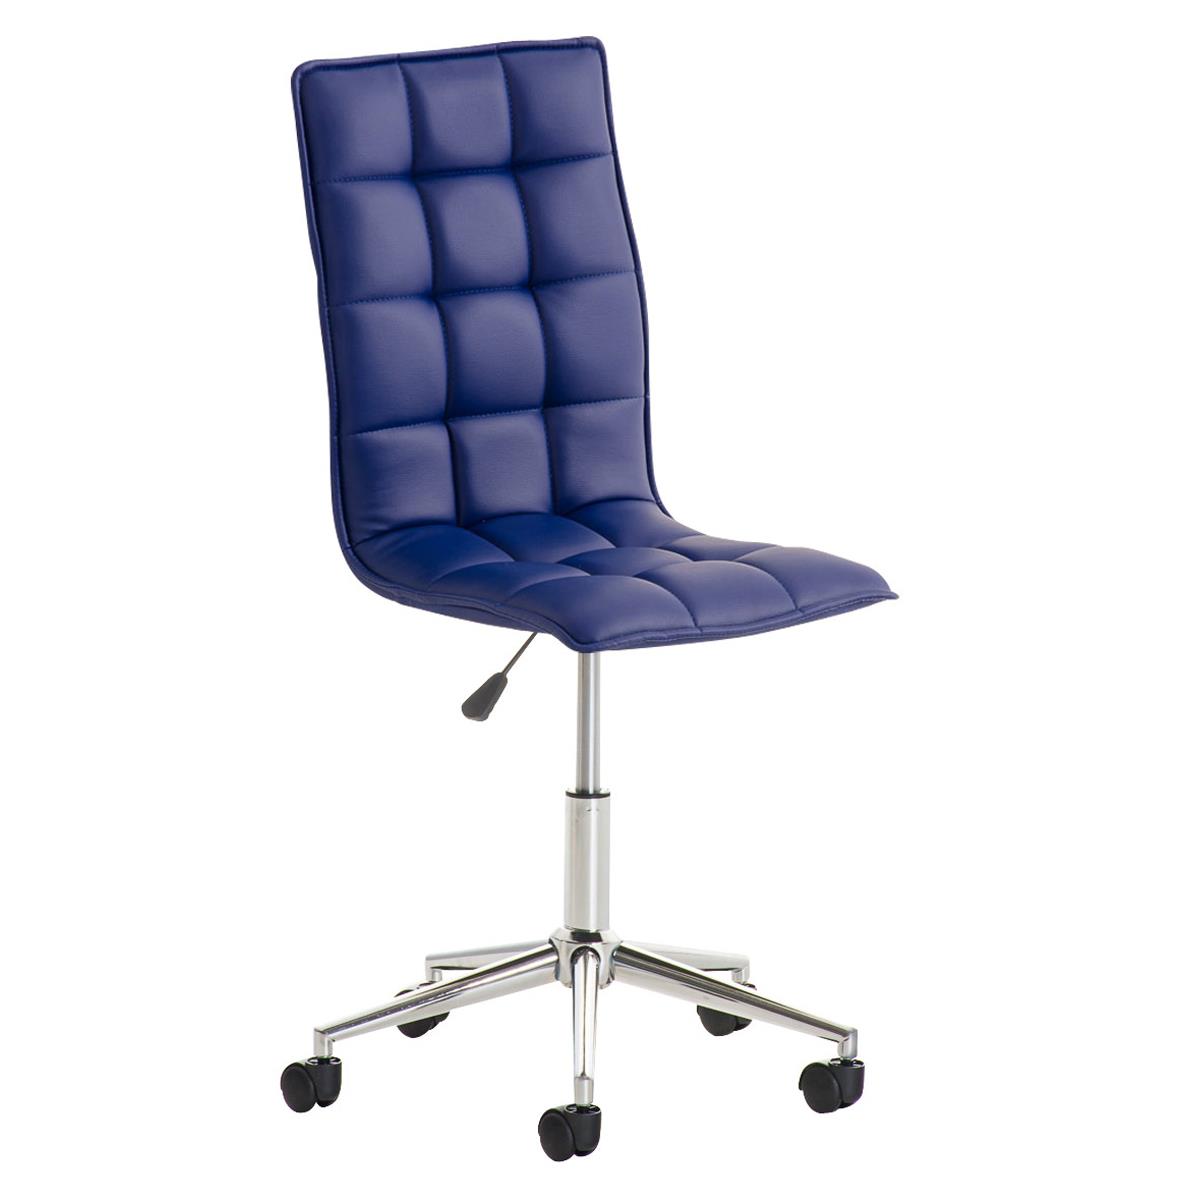 Chaise de bureau BULGARI, Design Sublime, Piétement Métallique, revêtement en Cuir, Bleu